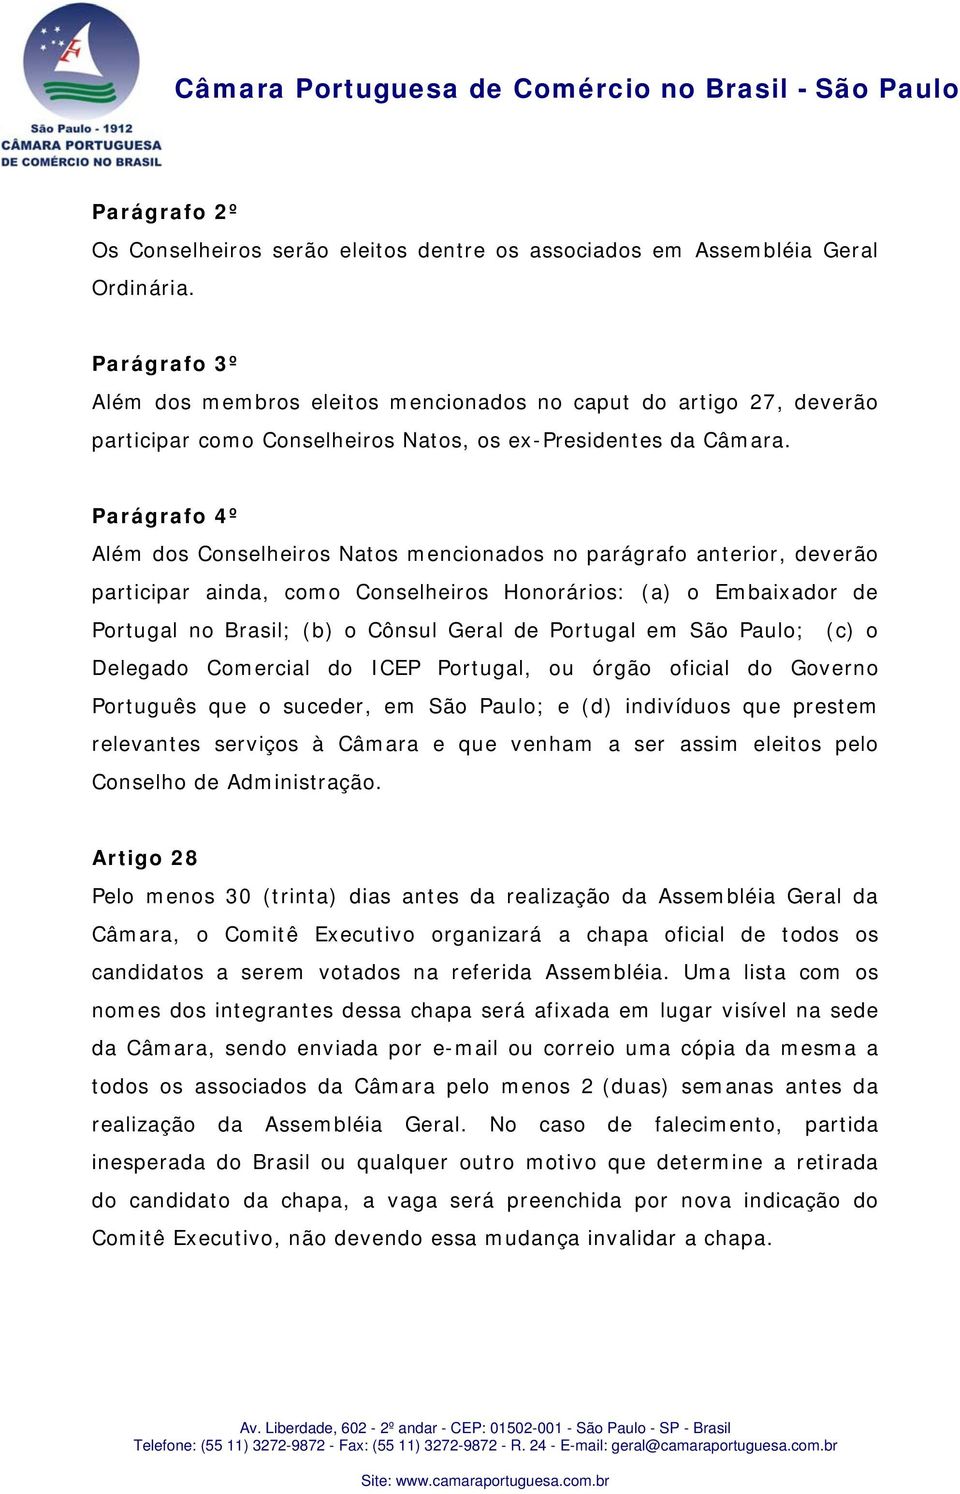 Parágrafo 4º Além dos Conselheiros Natos mencionados no parágrafo anterior, deverão participar ainda, como Conselheiros Honorários: (a) o Embaixador de Portugal no Brasil; (b) o Cônsul Geral de